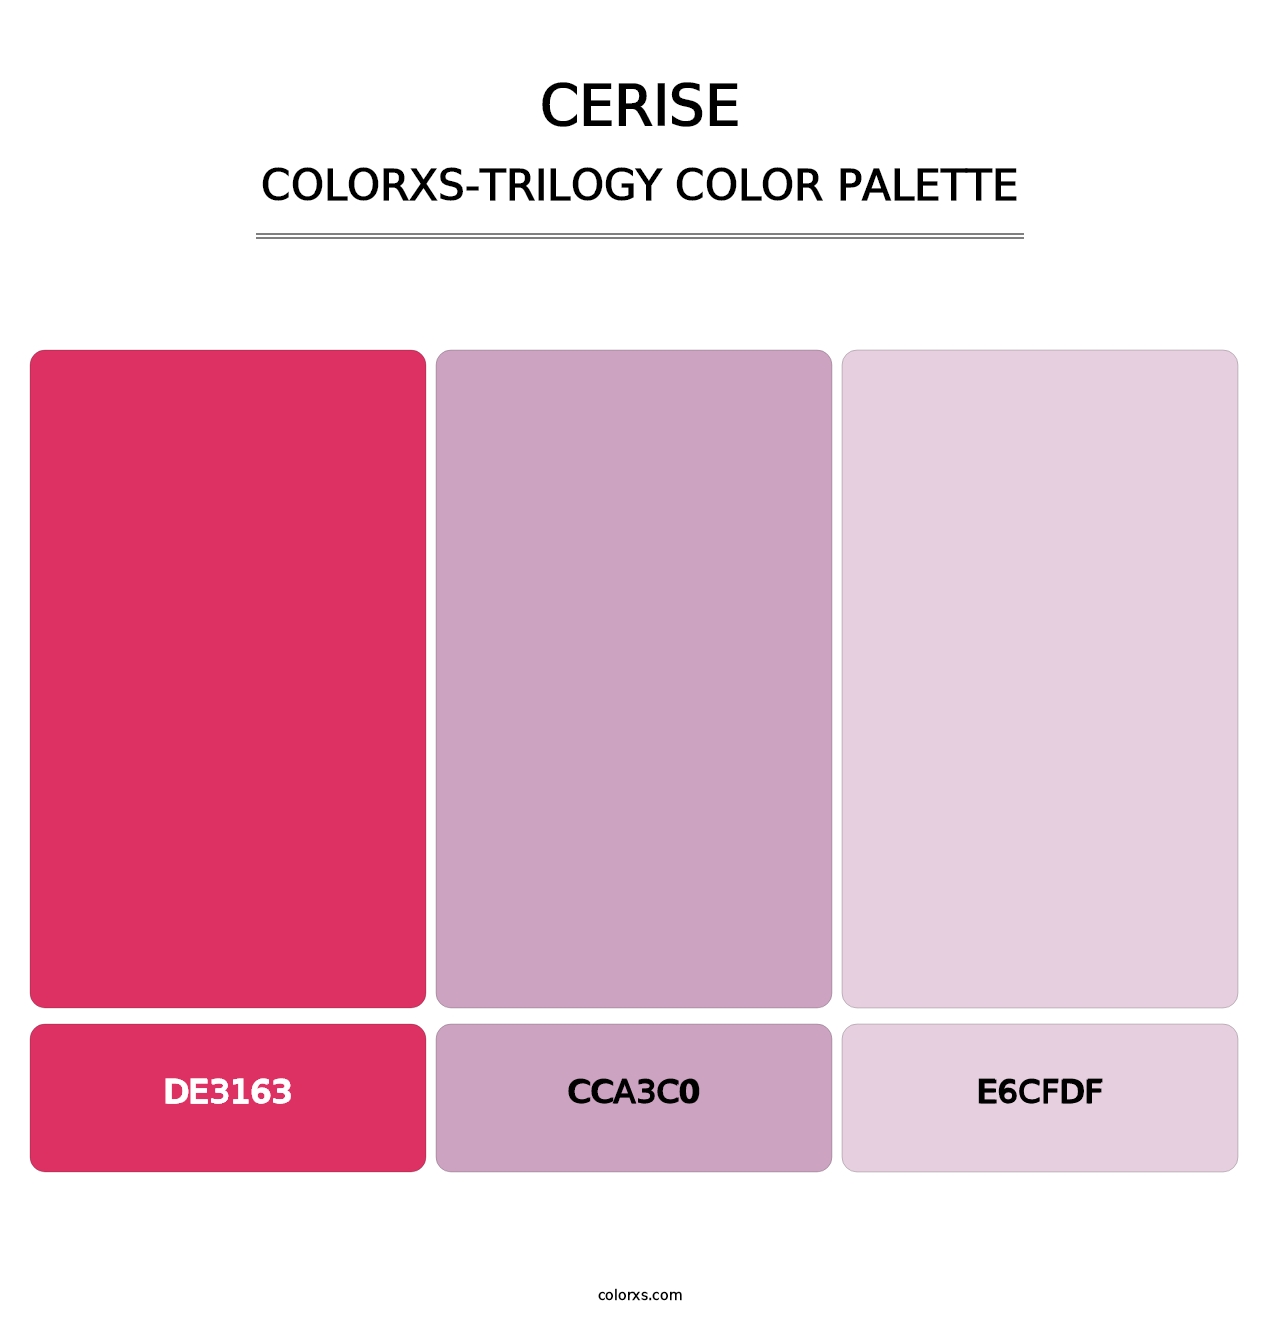 Cerise - Colorxs Trilogy Palette